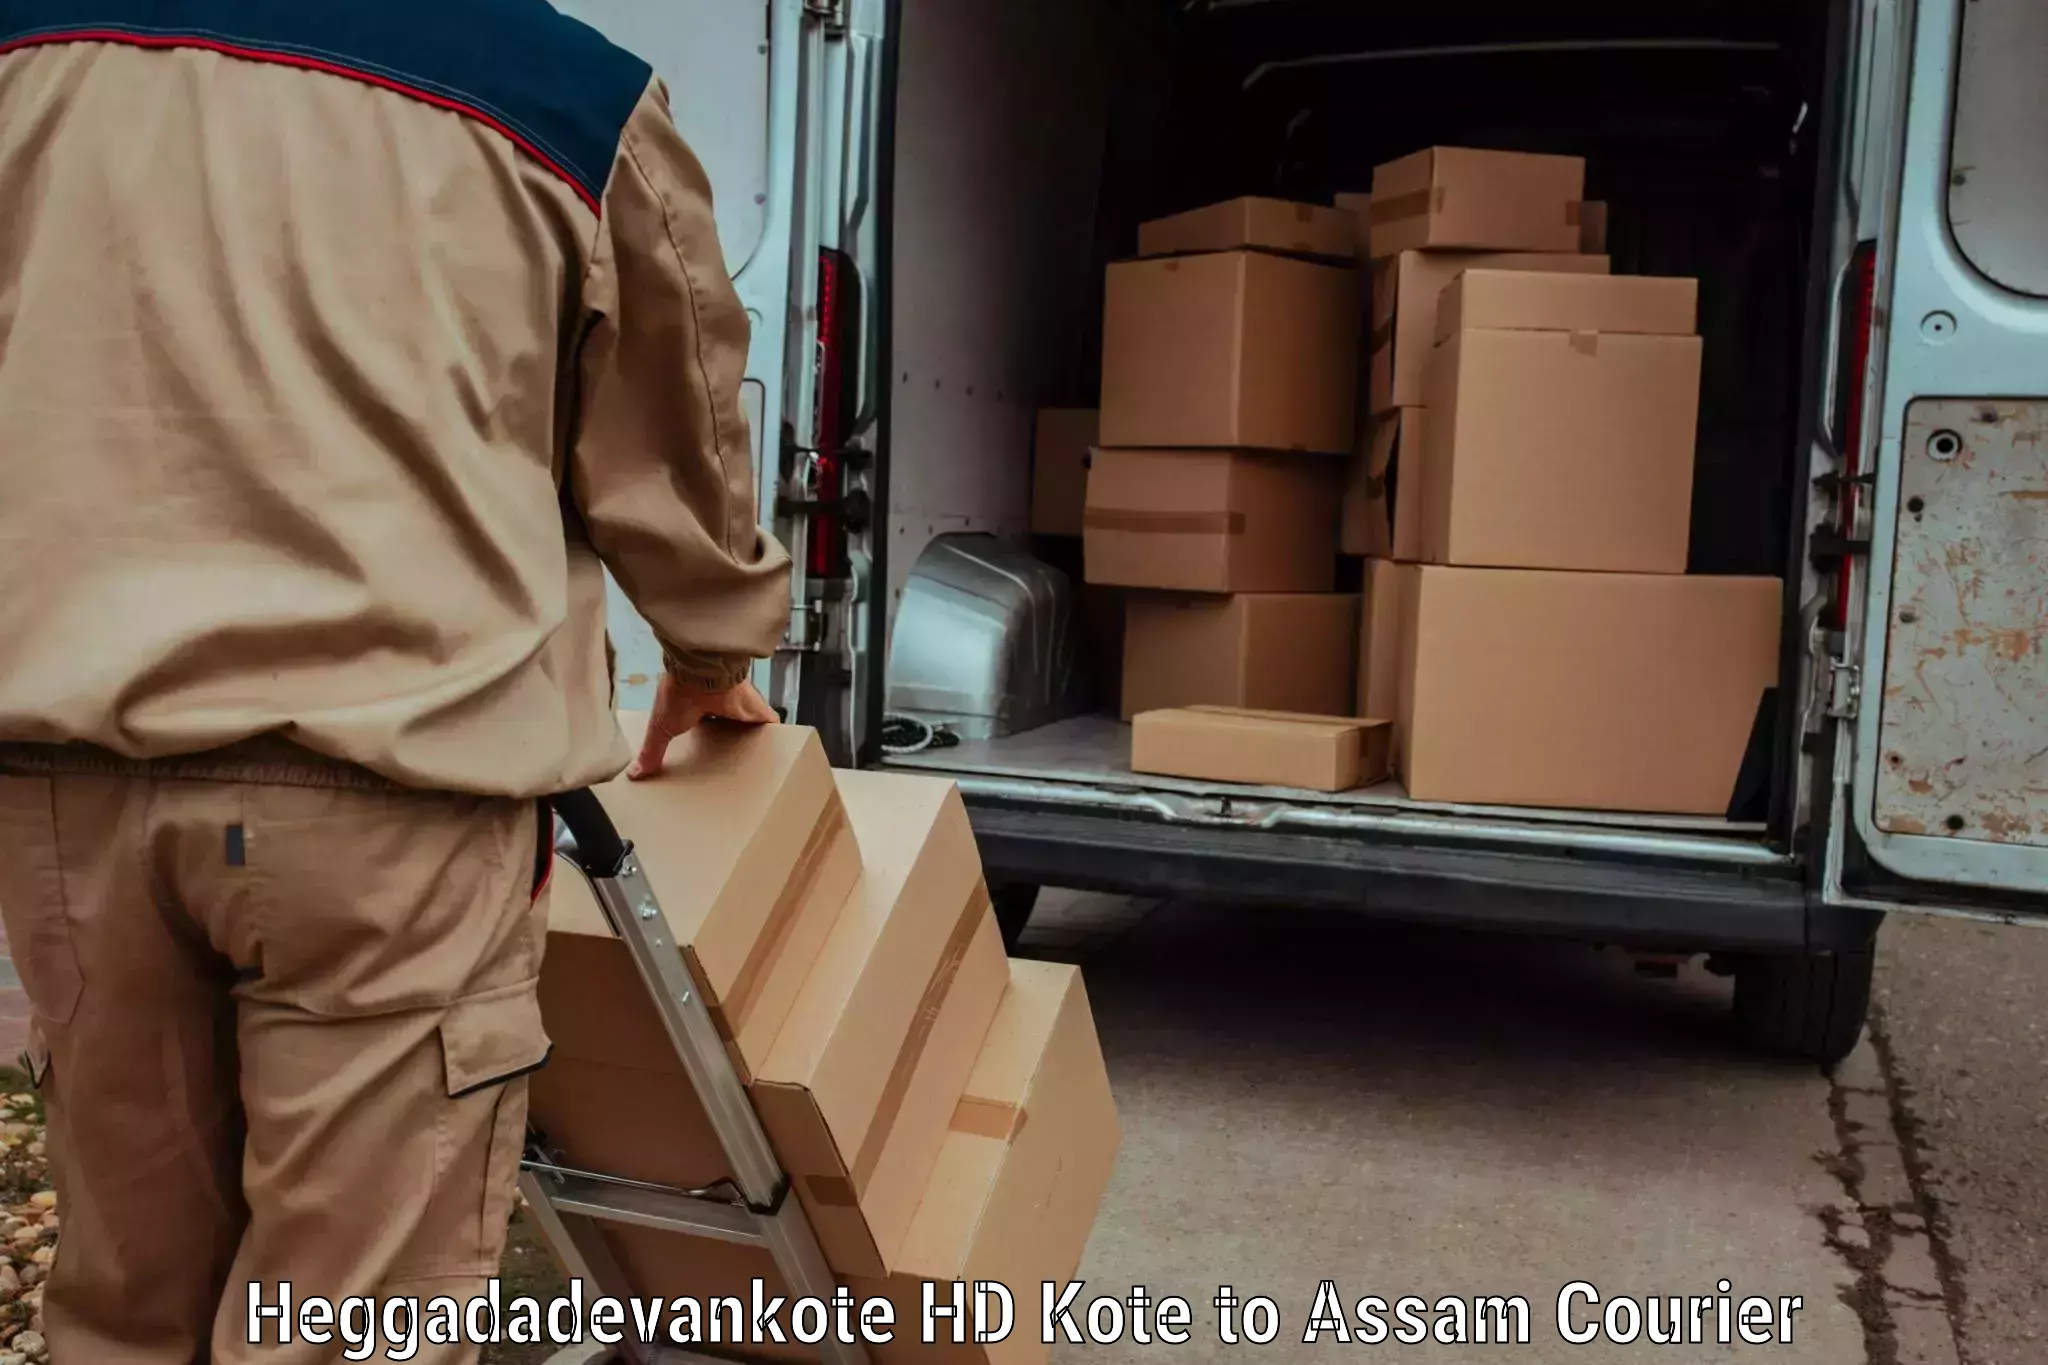 Efficient freight service Heggadadevankote HD Kote to Teok